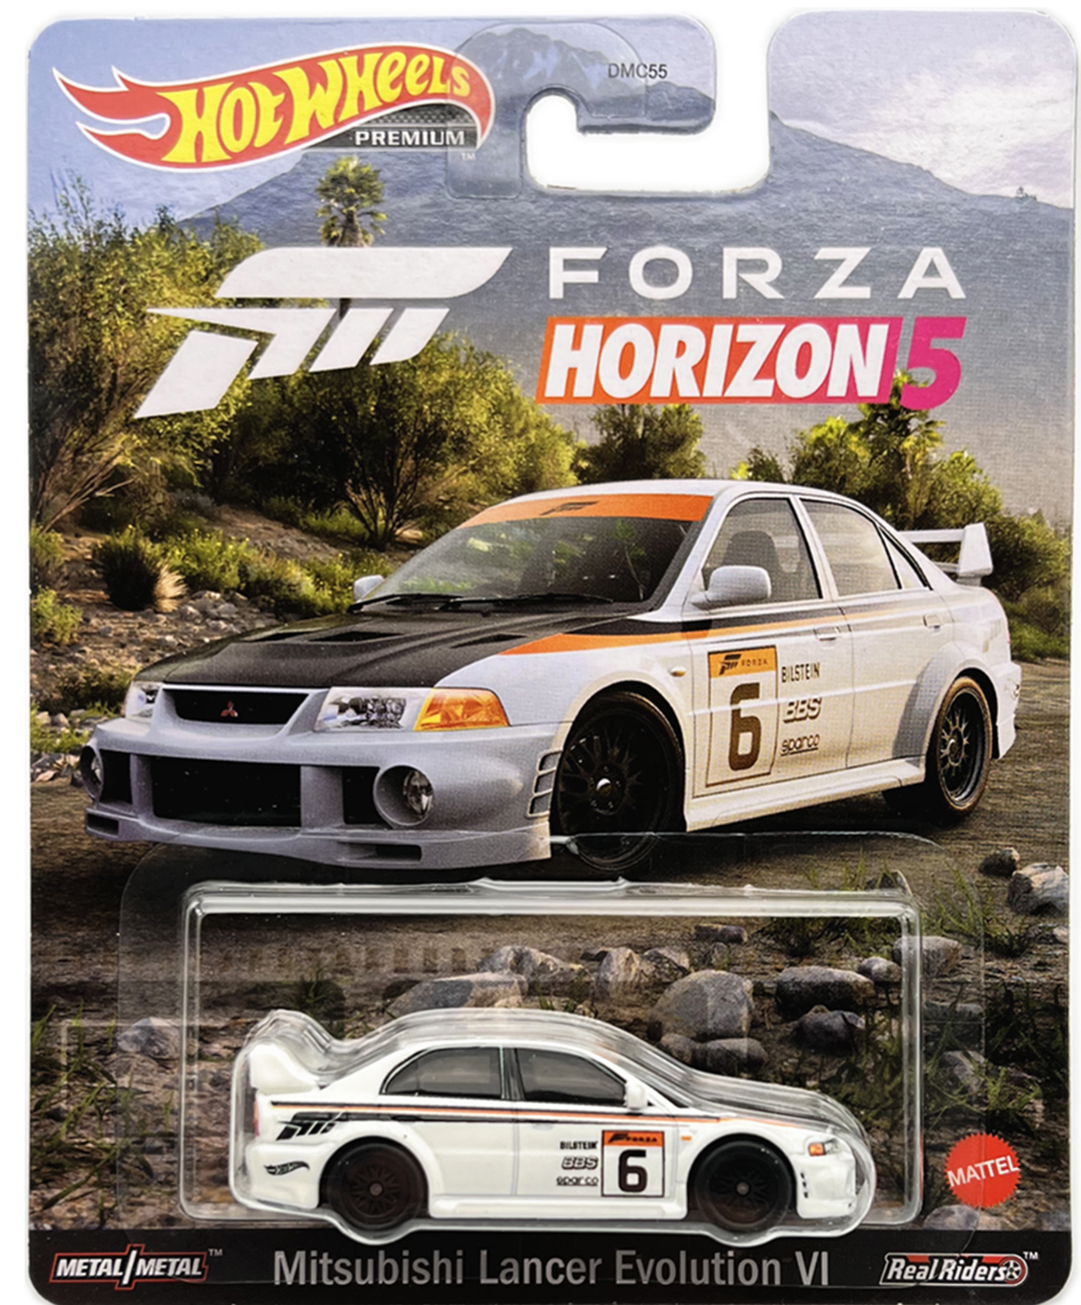 Hot Wheels Forza Horizon 5 Mitsubishi Lancer Evolution VI White 1:64